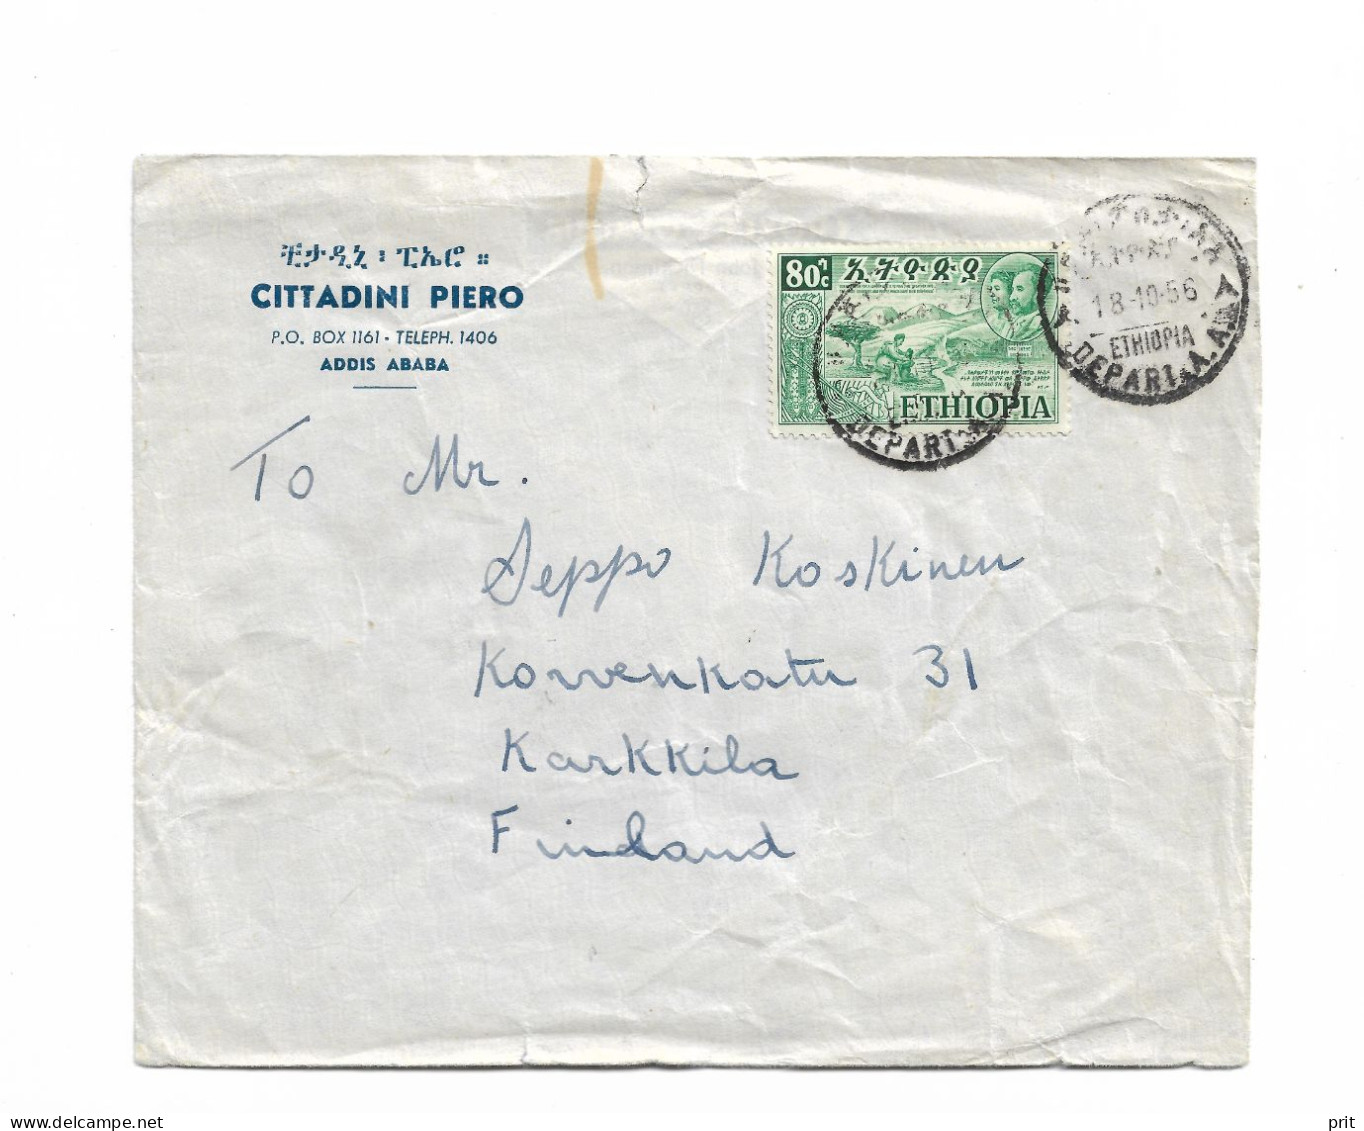 Addis Ababa Ethiopia Cover To Karkkila, Finland 1956 - Ethiopië